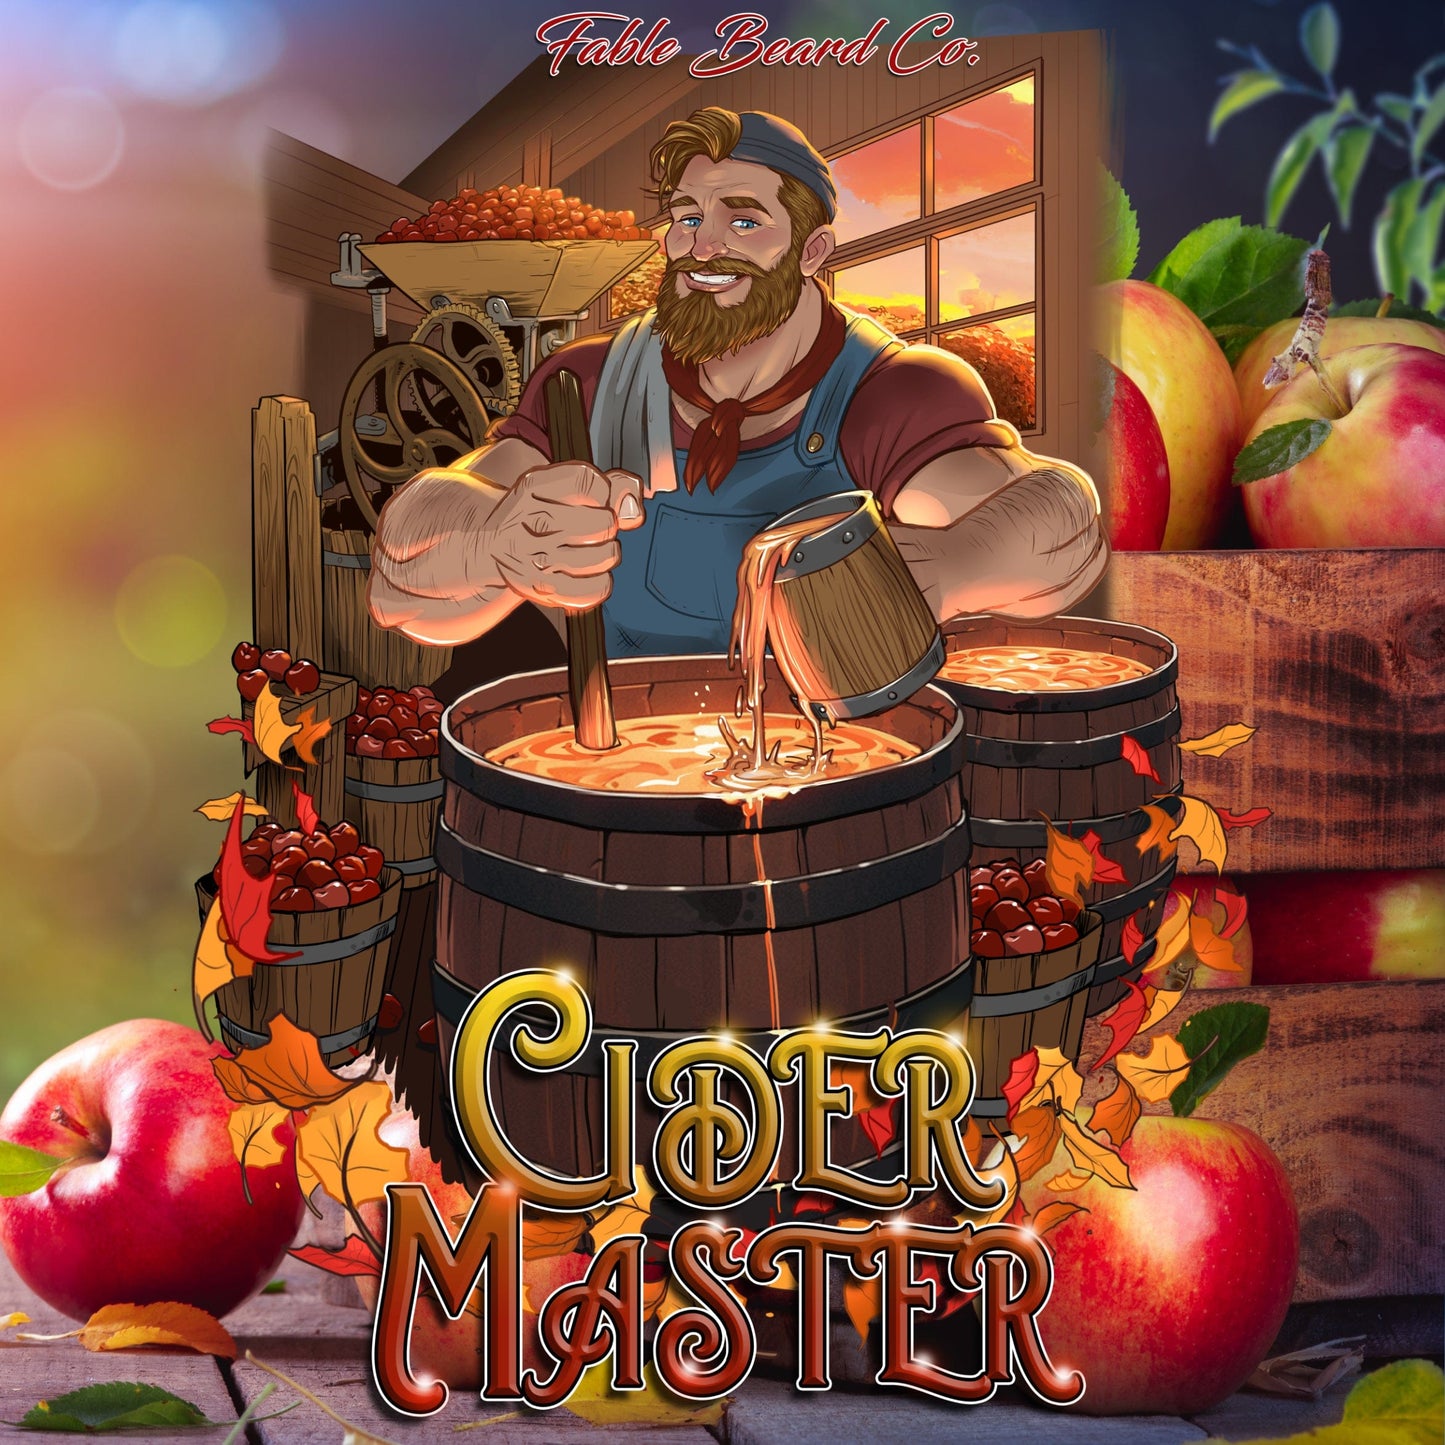 Cider Master - Apple Cider Memories Ultimate Bundle